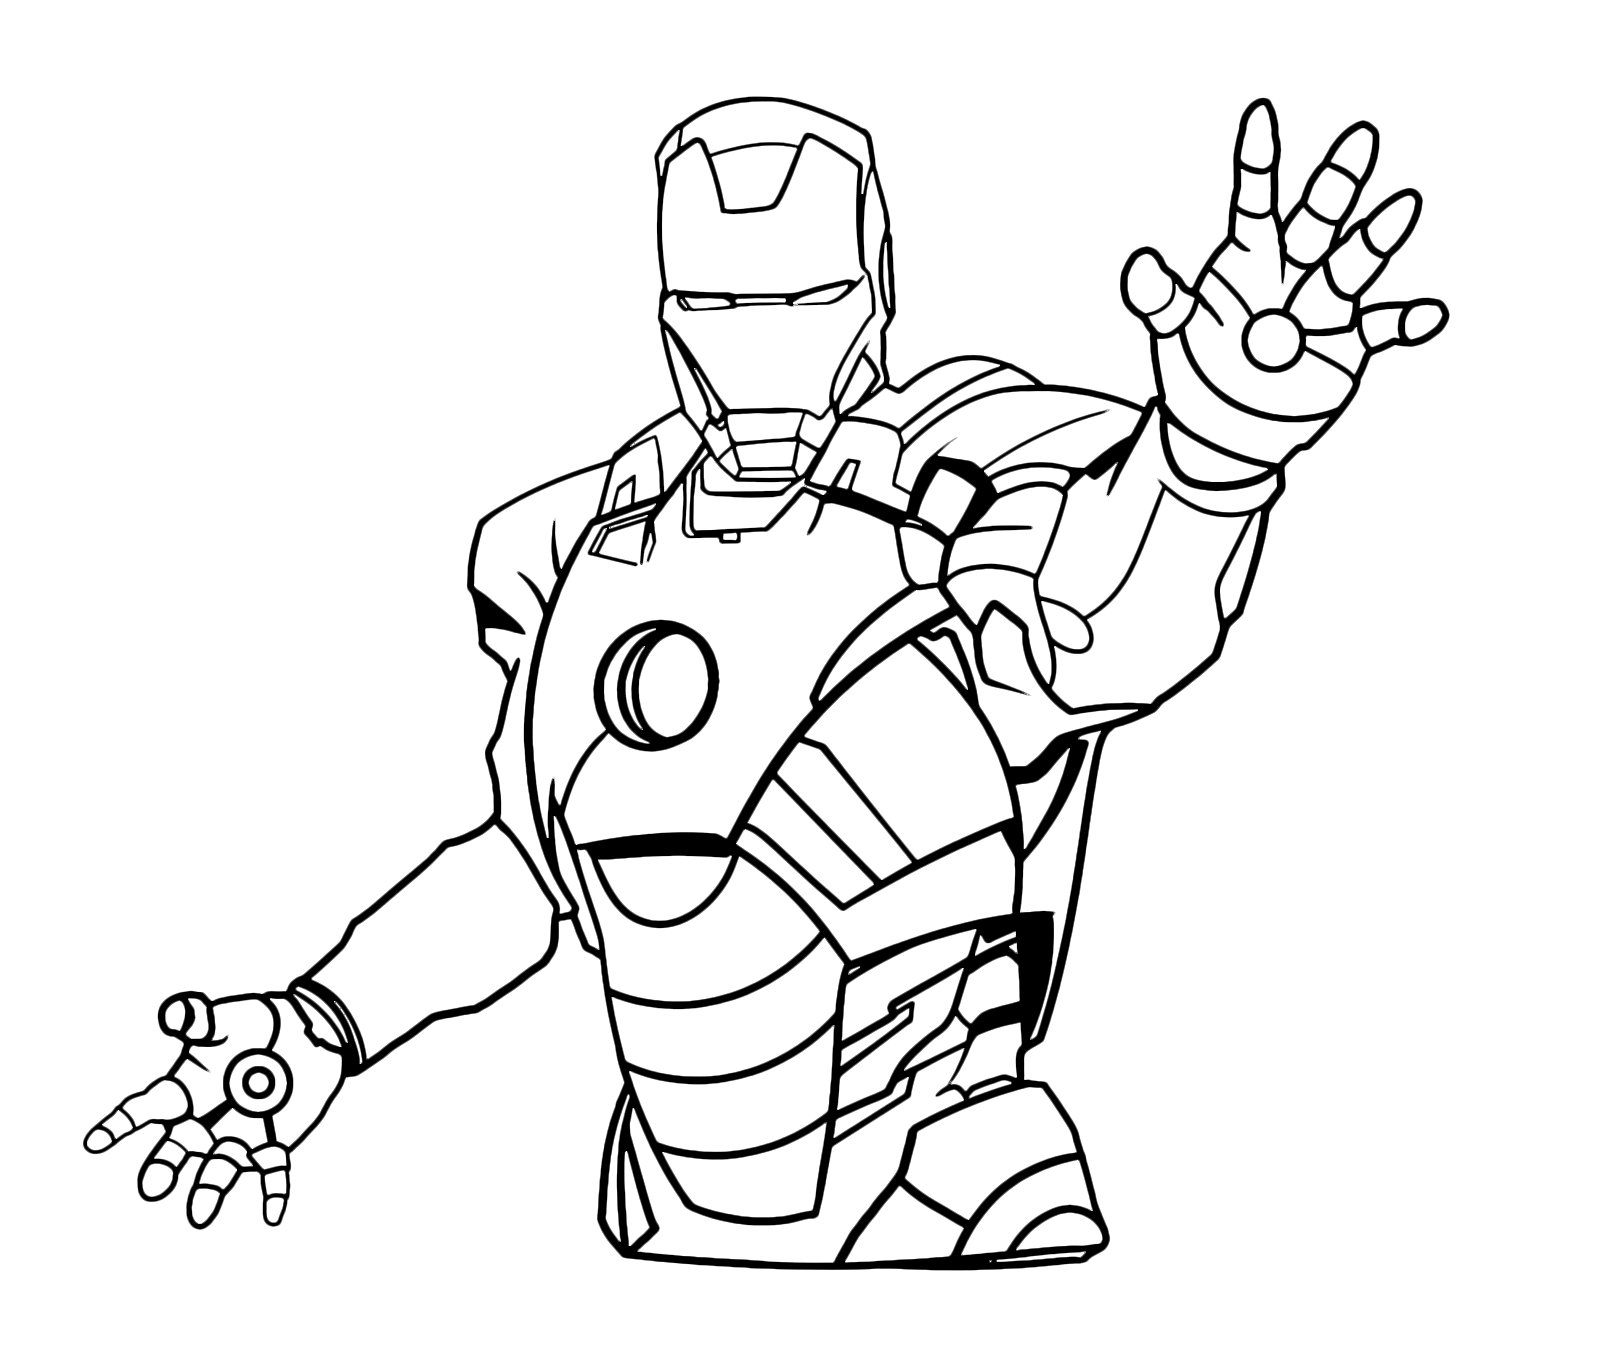 Iron Man - Iron Man pronto a far fuoco con il suo raggio distruttore